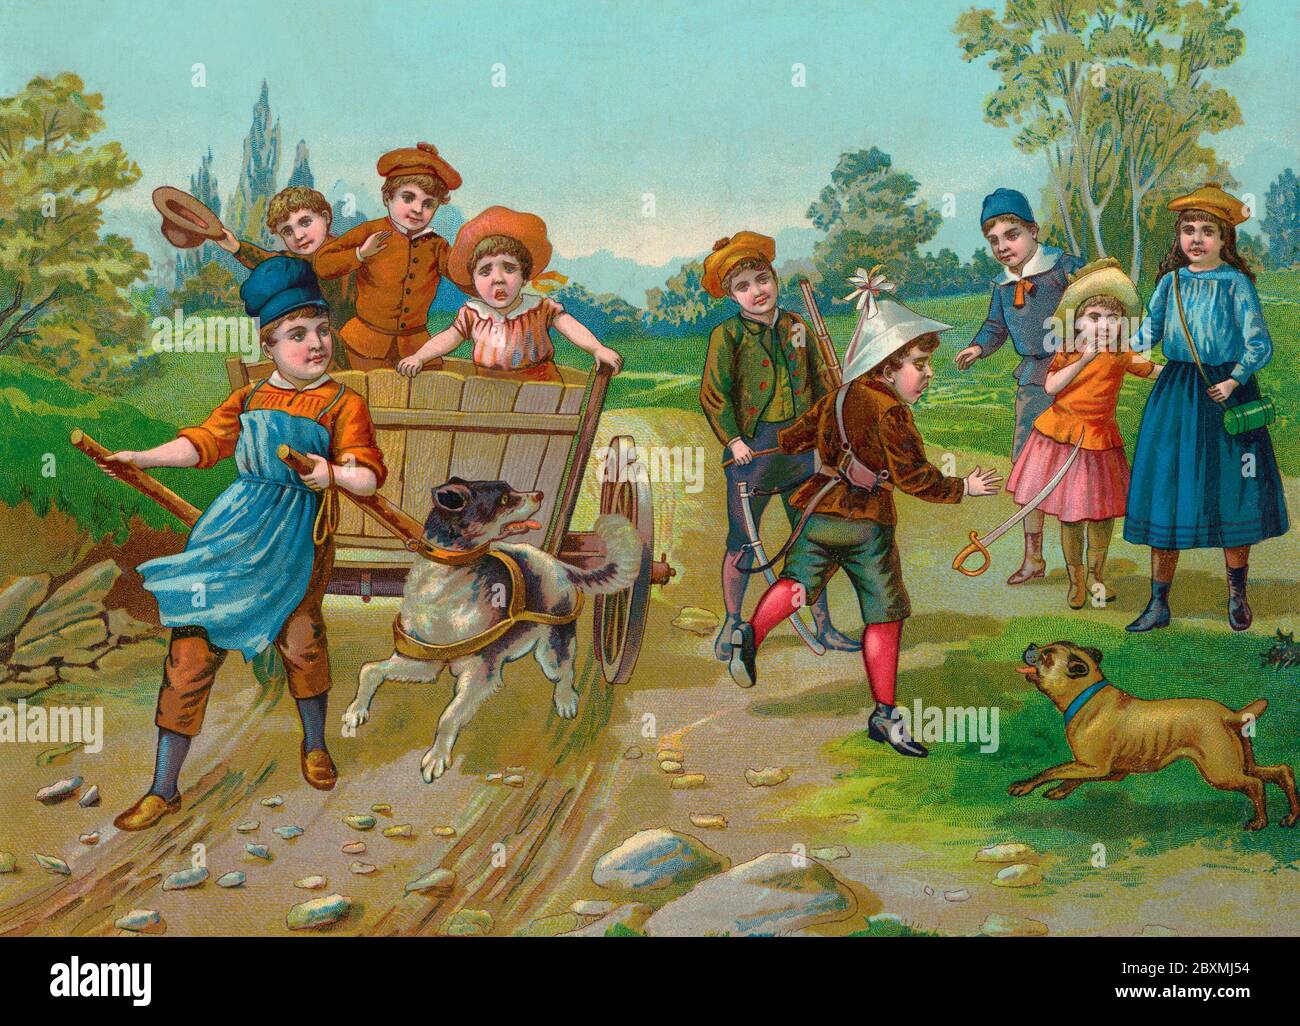 Alte Abbildung. Auf dieser britischen Illustration des 19. Jahrhunderts spielen Kinder im Freien. Eine fröhliche Sommerszene. Stockfoto